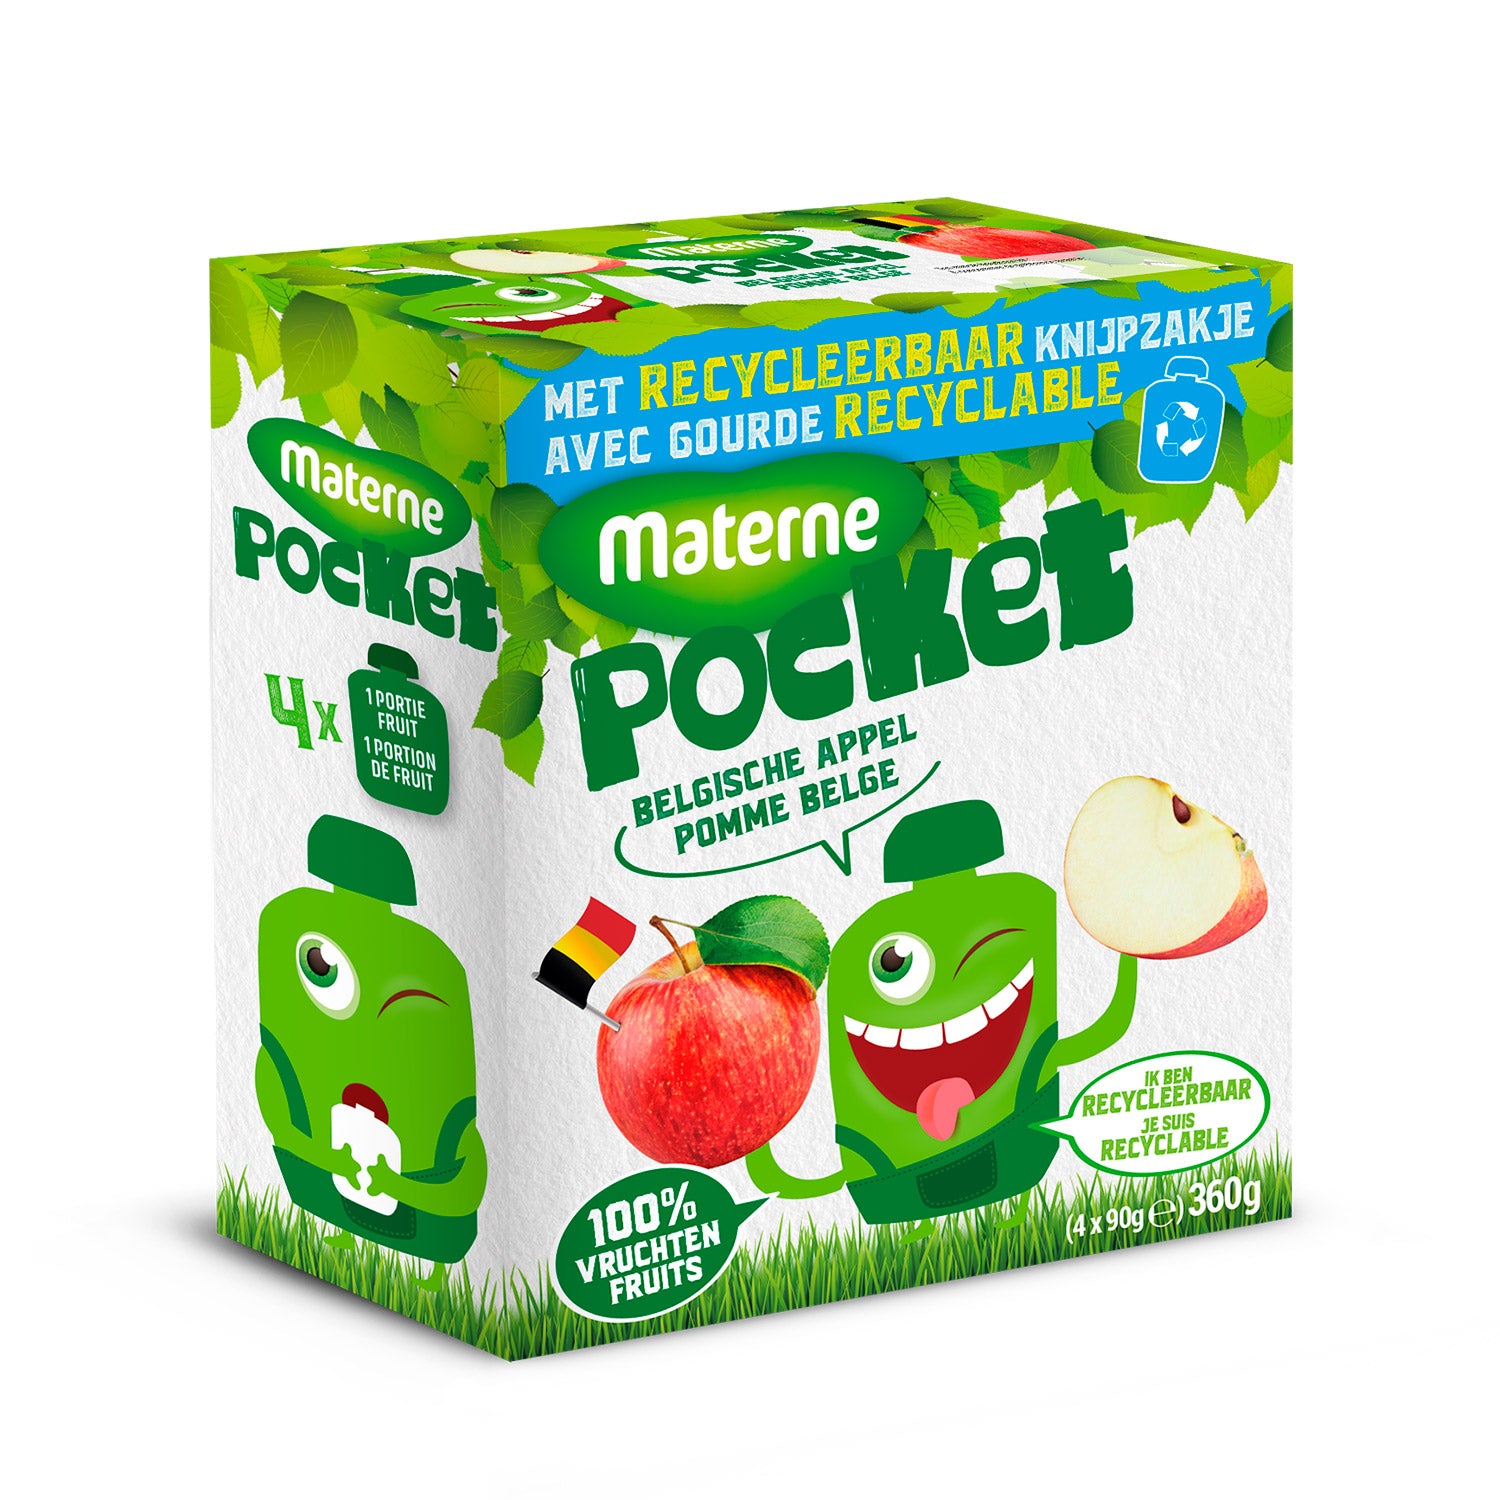 Materne Pocket<br>Pomme Belge